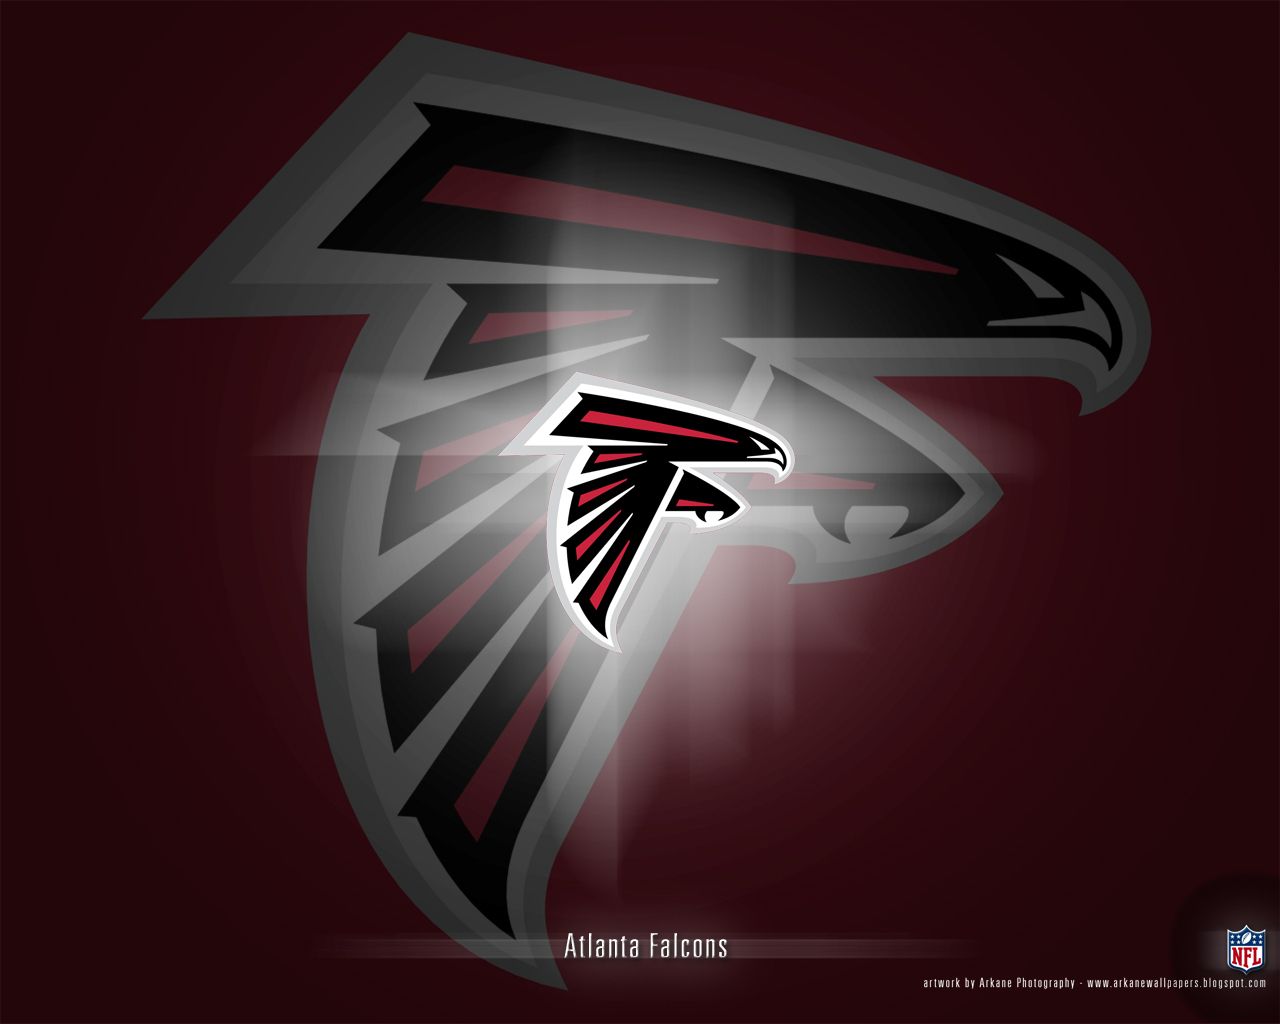 Atlanta Falcons - Atlanta Falcons Wallpaper 9173279 - Fanpop